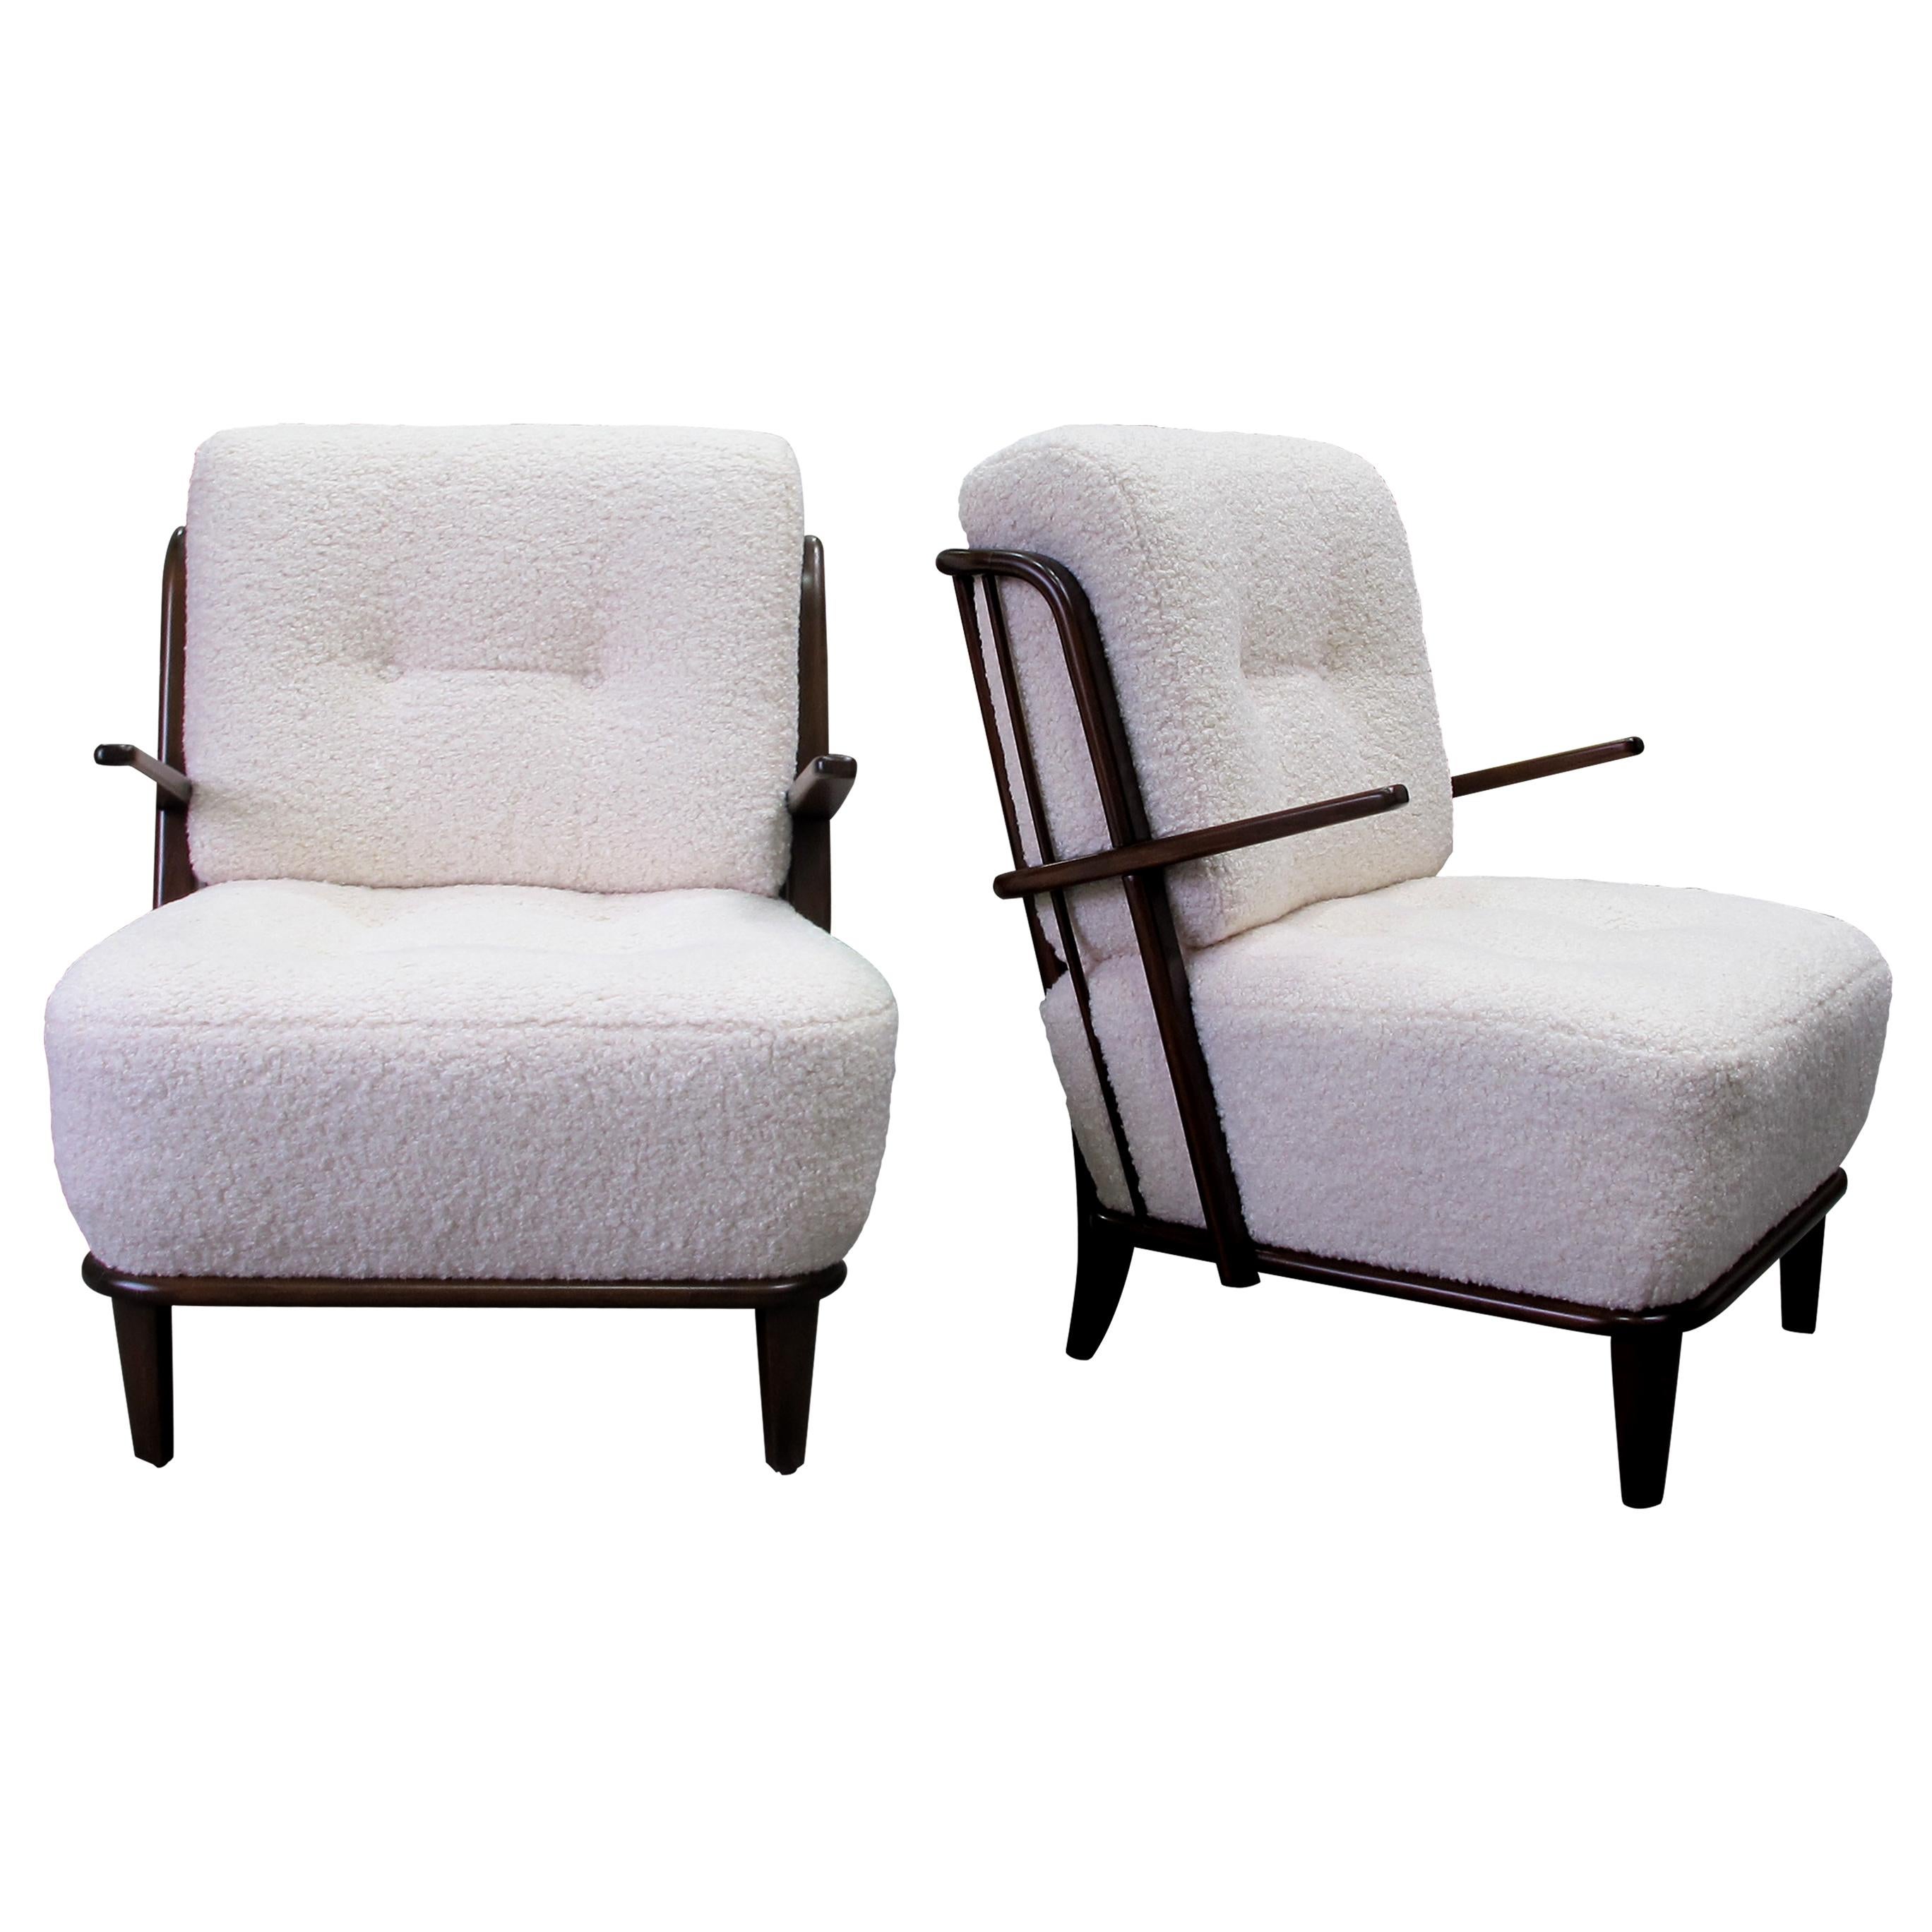 Il s'agit d'une paire de fauteuils en chêne très élégants, fabriqués en Allemagne dans les années 1940, récemment tapissés d'un tissu bouclé doux.  La caractéristique déterminante de ces fauteuils est le dossier méticuleusement conçu avec des barres